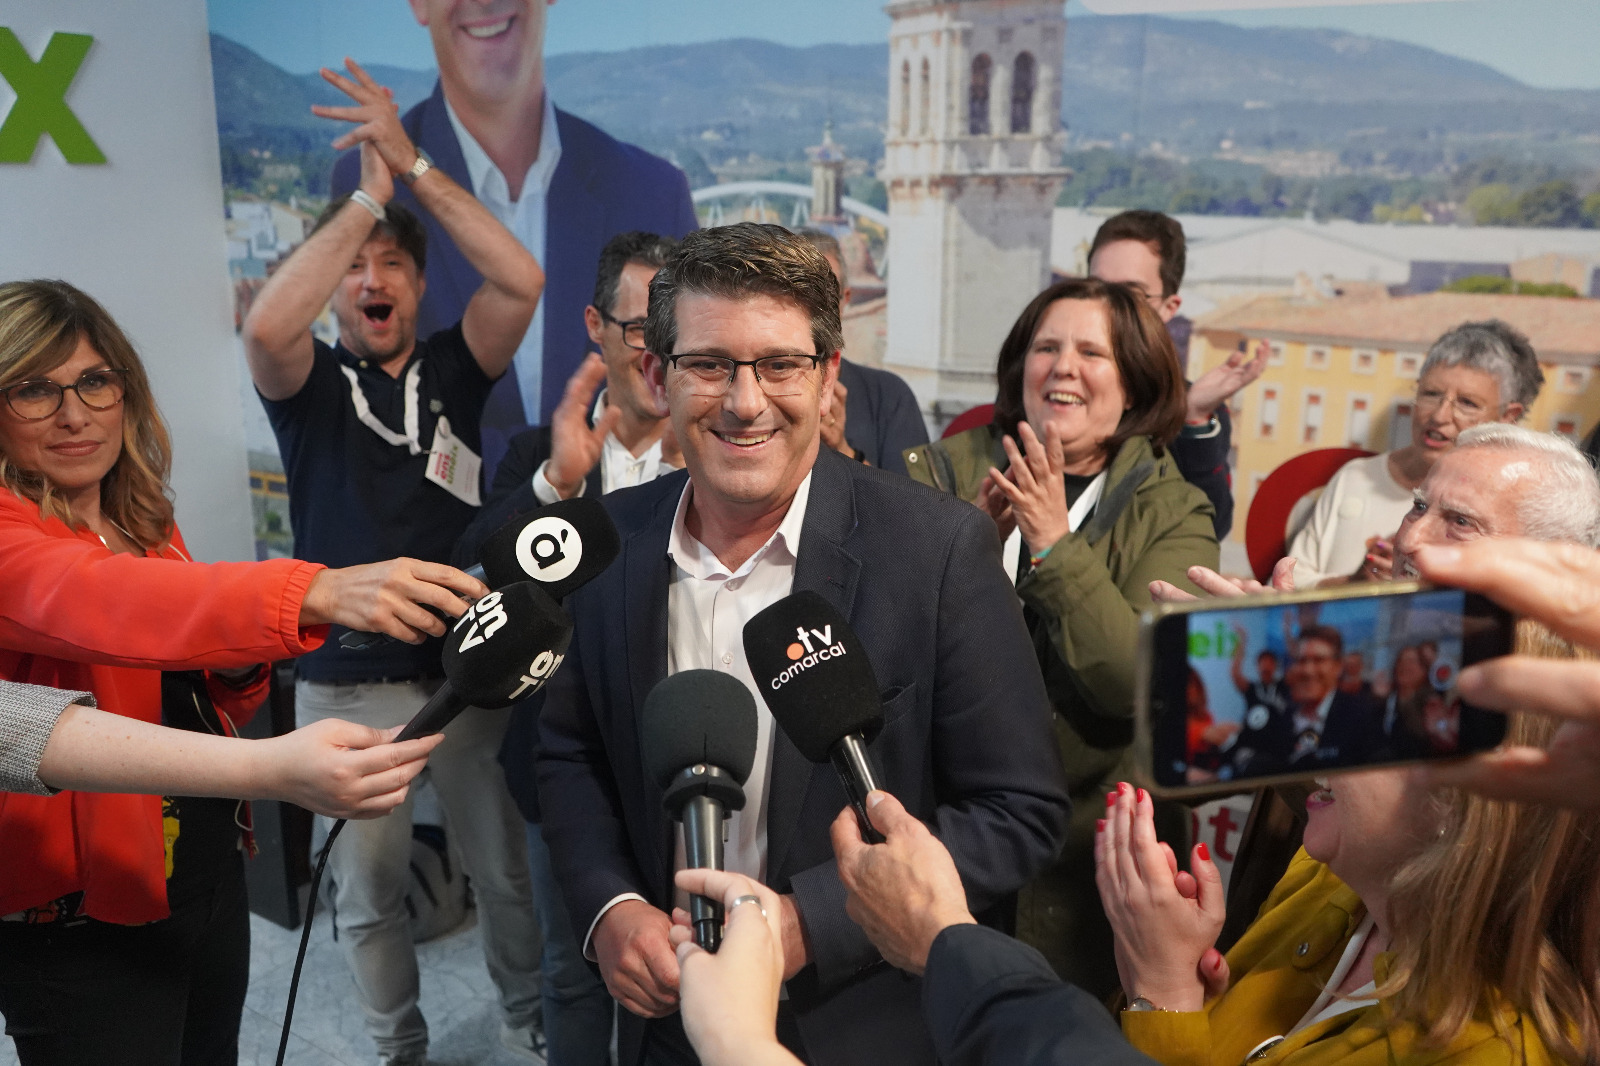 Jorge Rodríguez revalida la mayoría absoluta; Nos Uneix mantiene el diputado comarcal El Periódico de Ontinyent - Noticias en Ontinyent